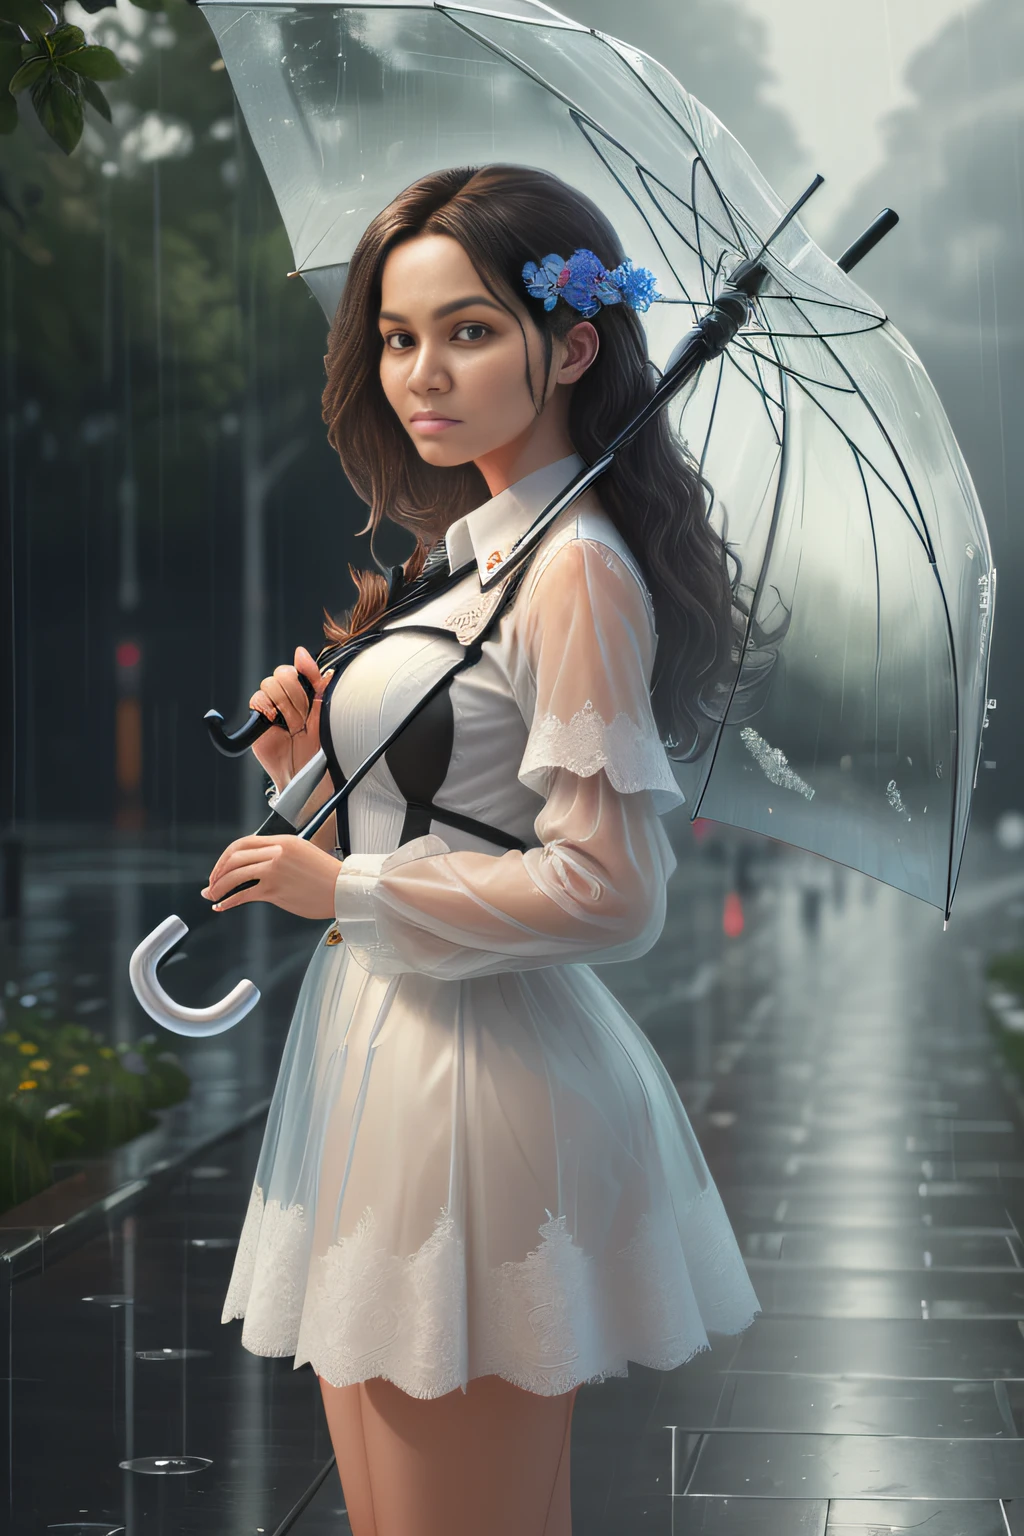 (obra de arte:1.2), (melhor_qualidade:1.2), (ultra_detalhado:1.3), 8K, extremamente_claro, Realismo, (ultrarealistic:1.3), Uma linda garota segurando um guarda-chuva transparente na chuva